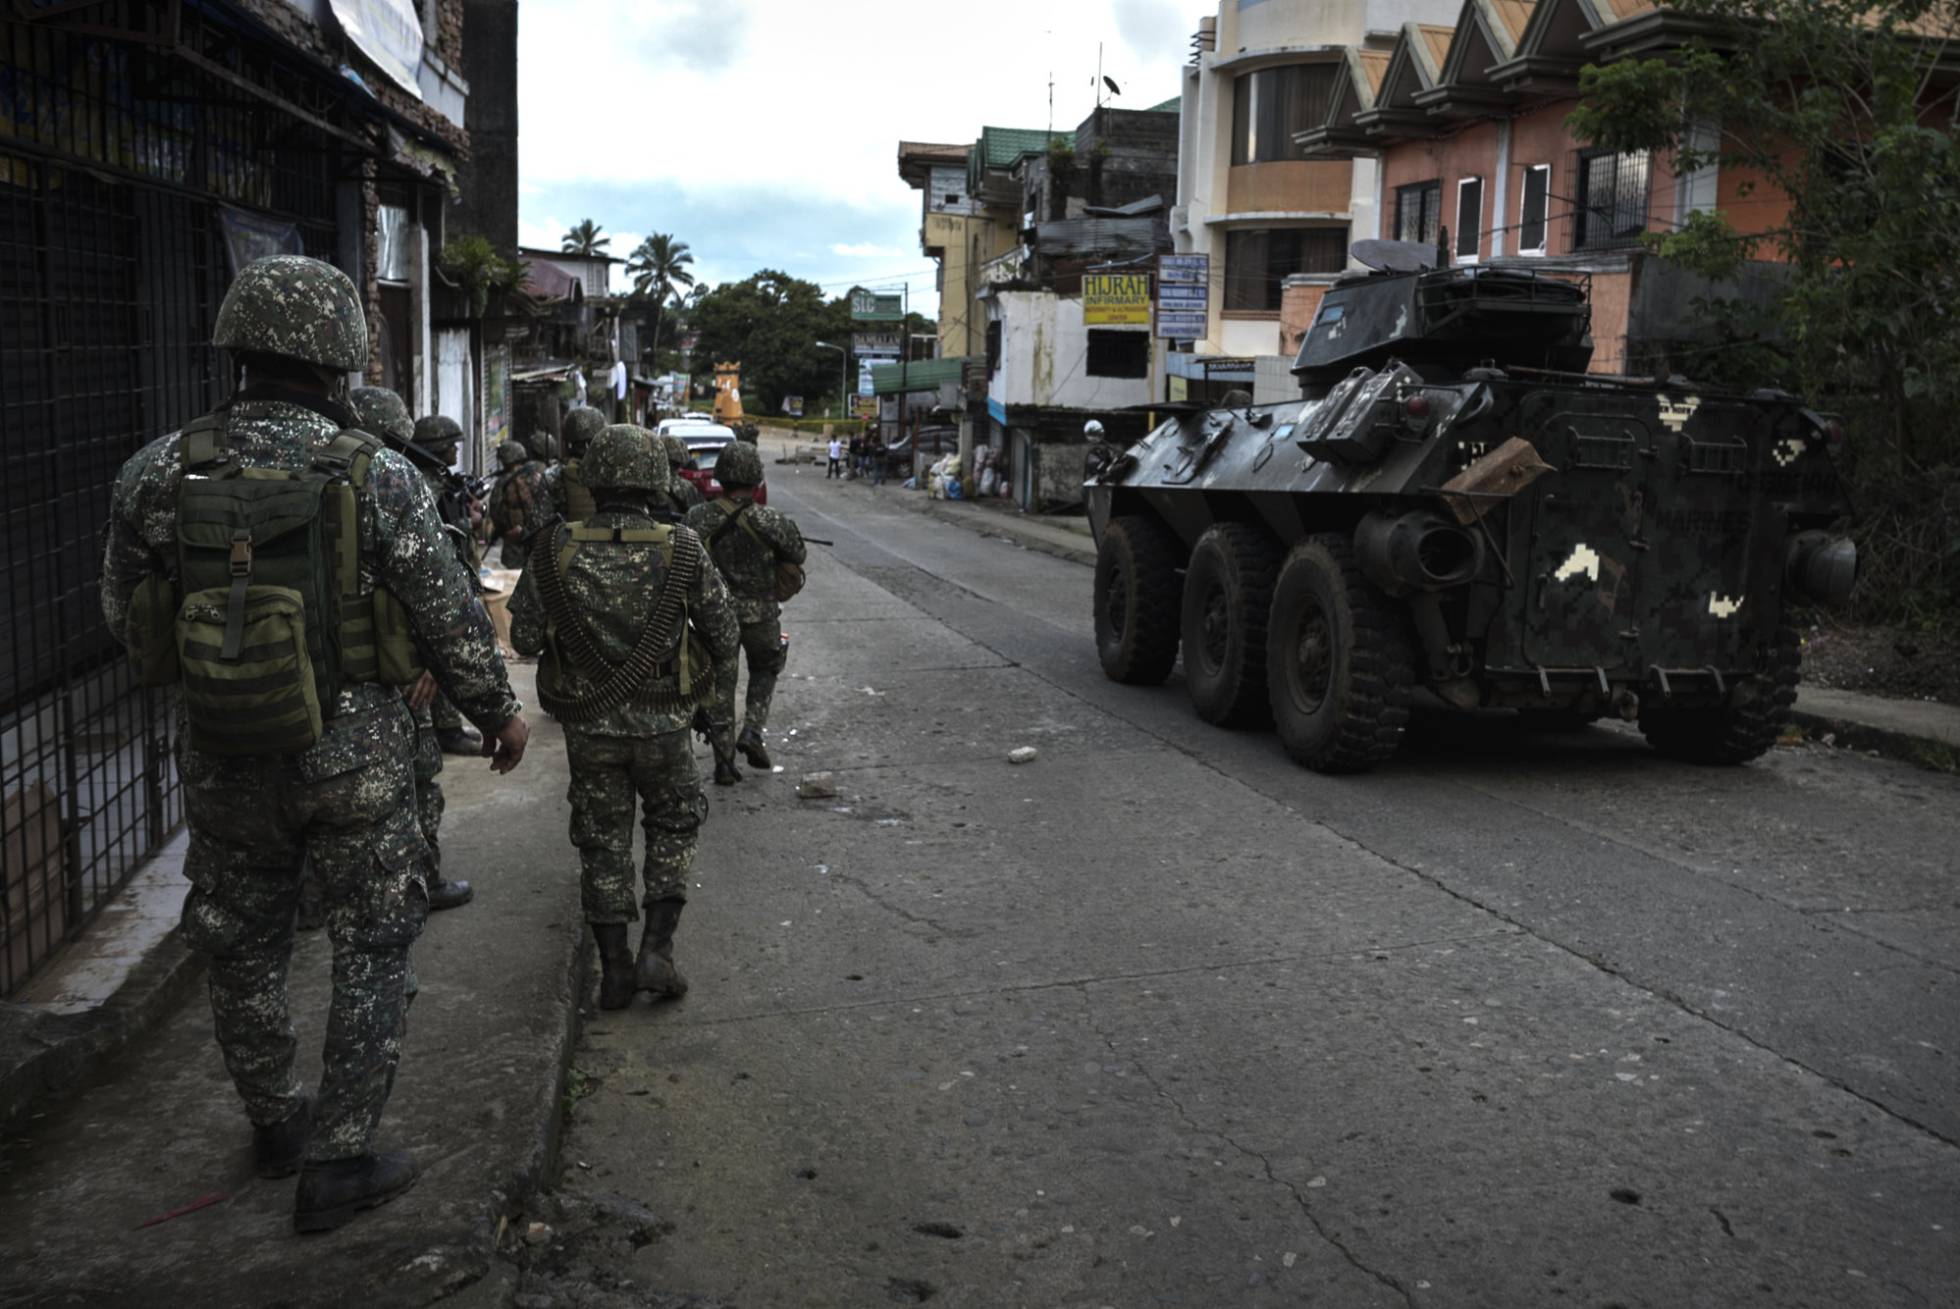 Filipinas declara la ley marcial por la toma de la ciudad de Marawi por terroristas 1496039367_077629_1496047477_sumario_normal_recorte1